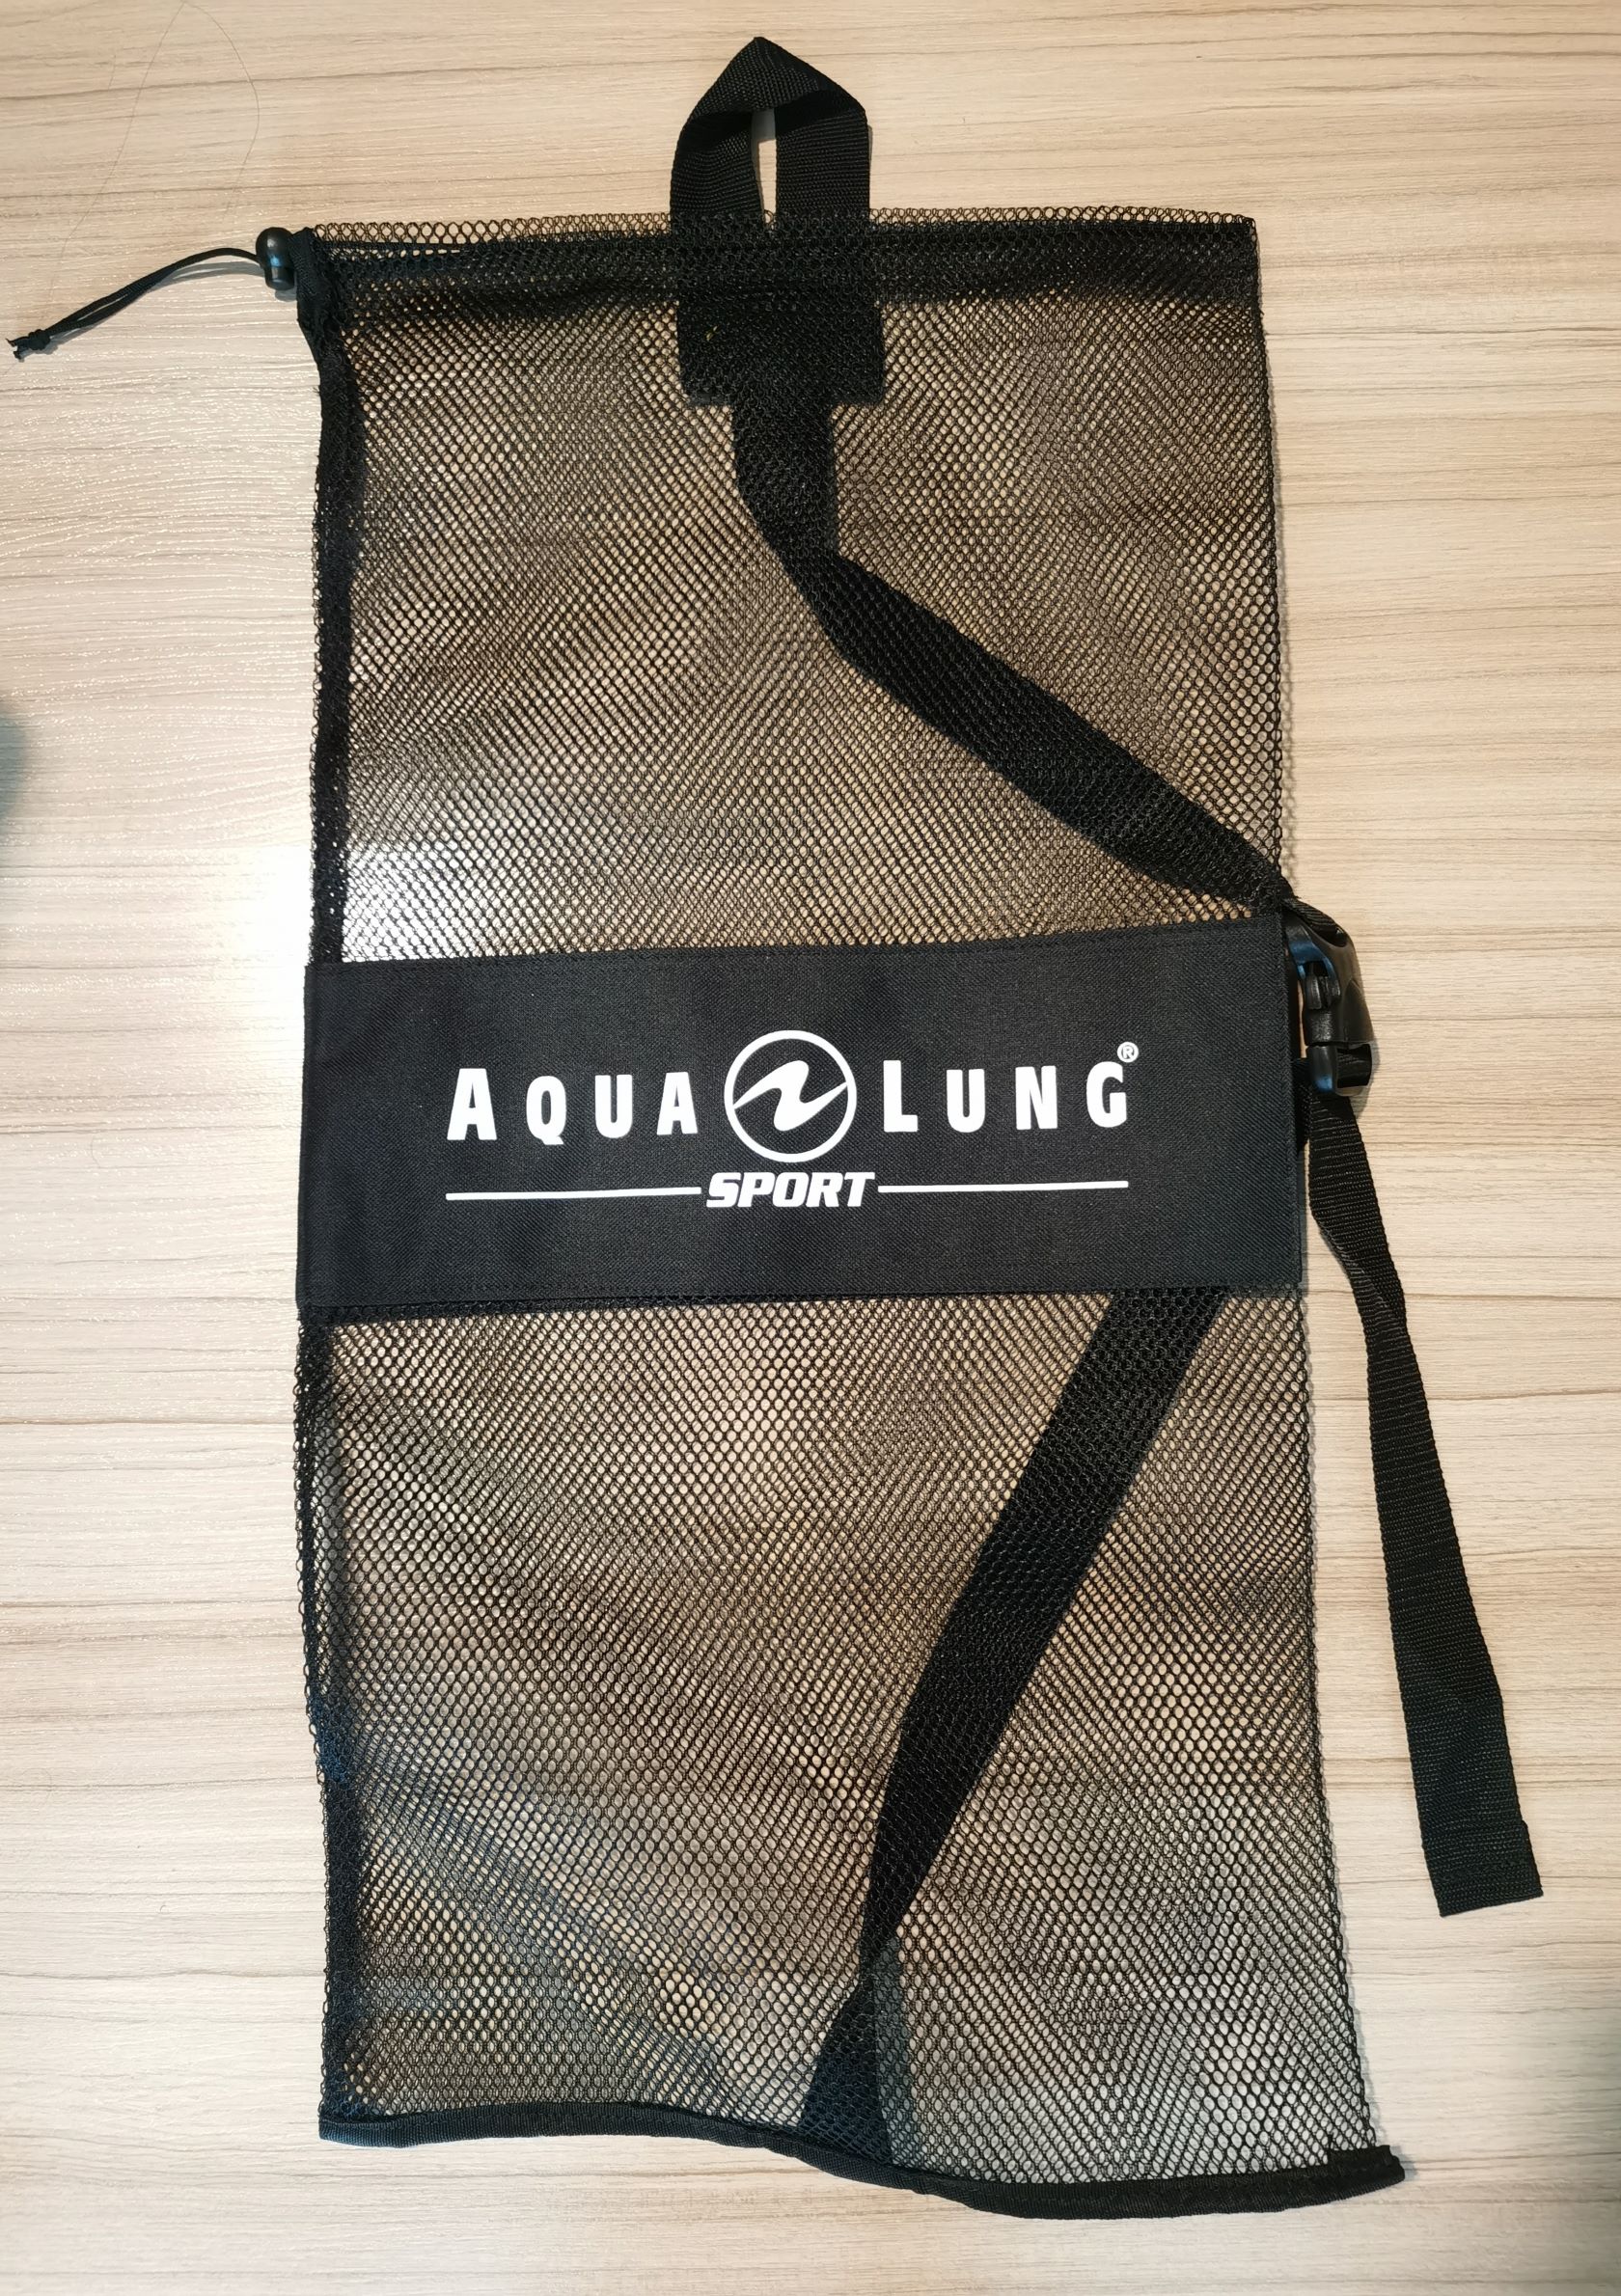 Aqua Lung Sport _MESH BAG FOR SNORKELING_Fins MESH BAG_14